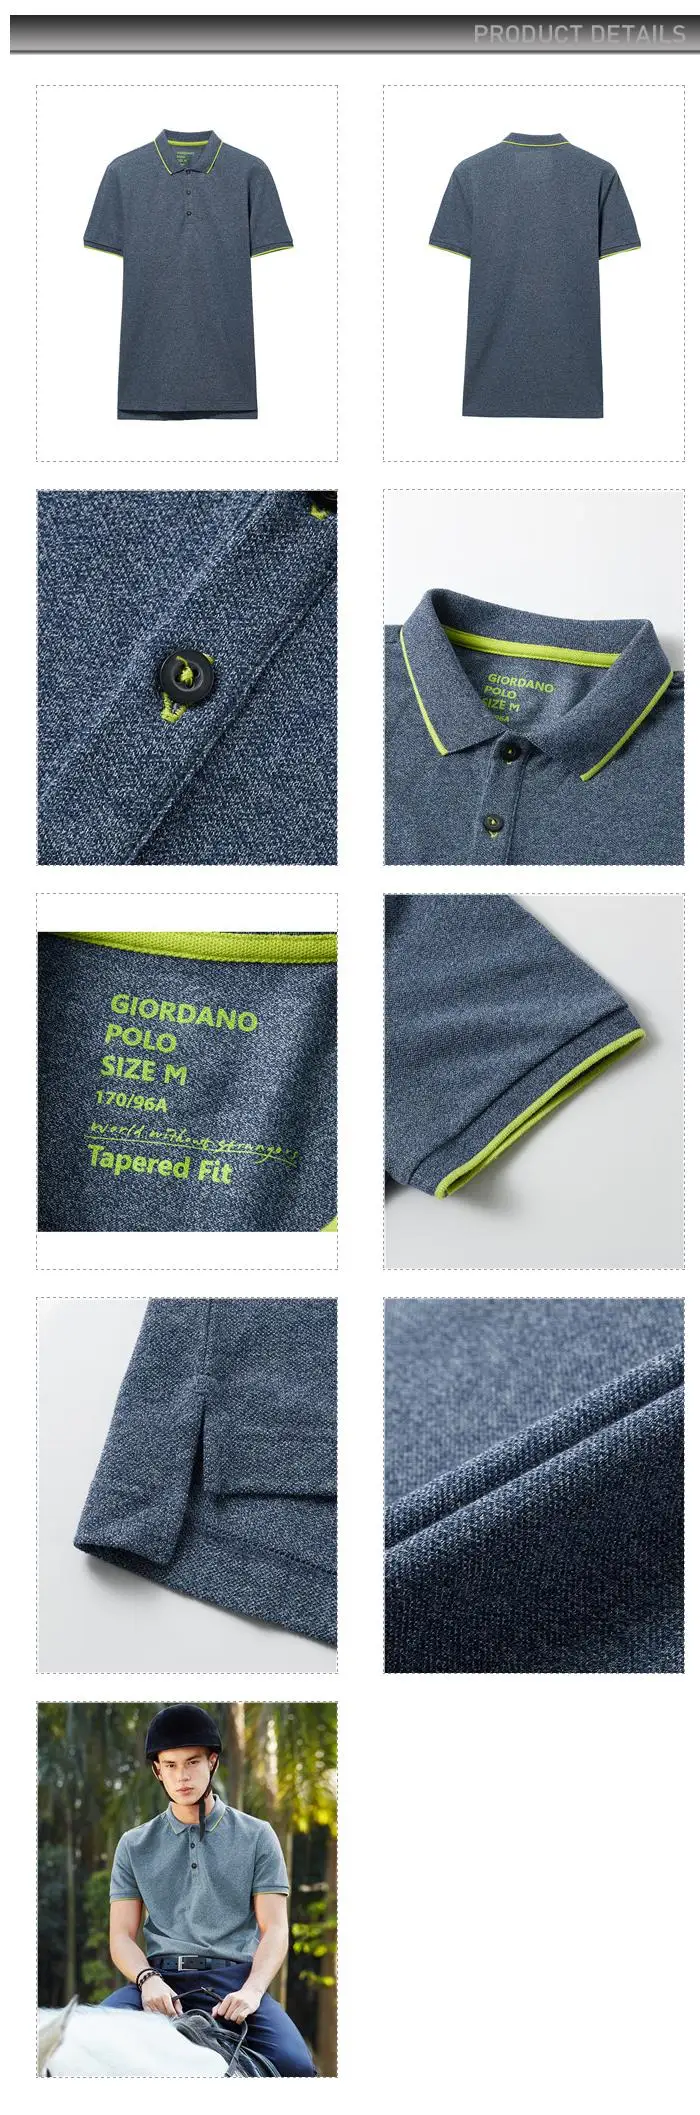 Giordano поло мужское футболка slim fit Polo фирмы Giordano с короткими рукавами выполнена из хлопка и полиэстера, рубашка а так же имеет нескольких цветовых вариантов